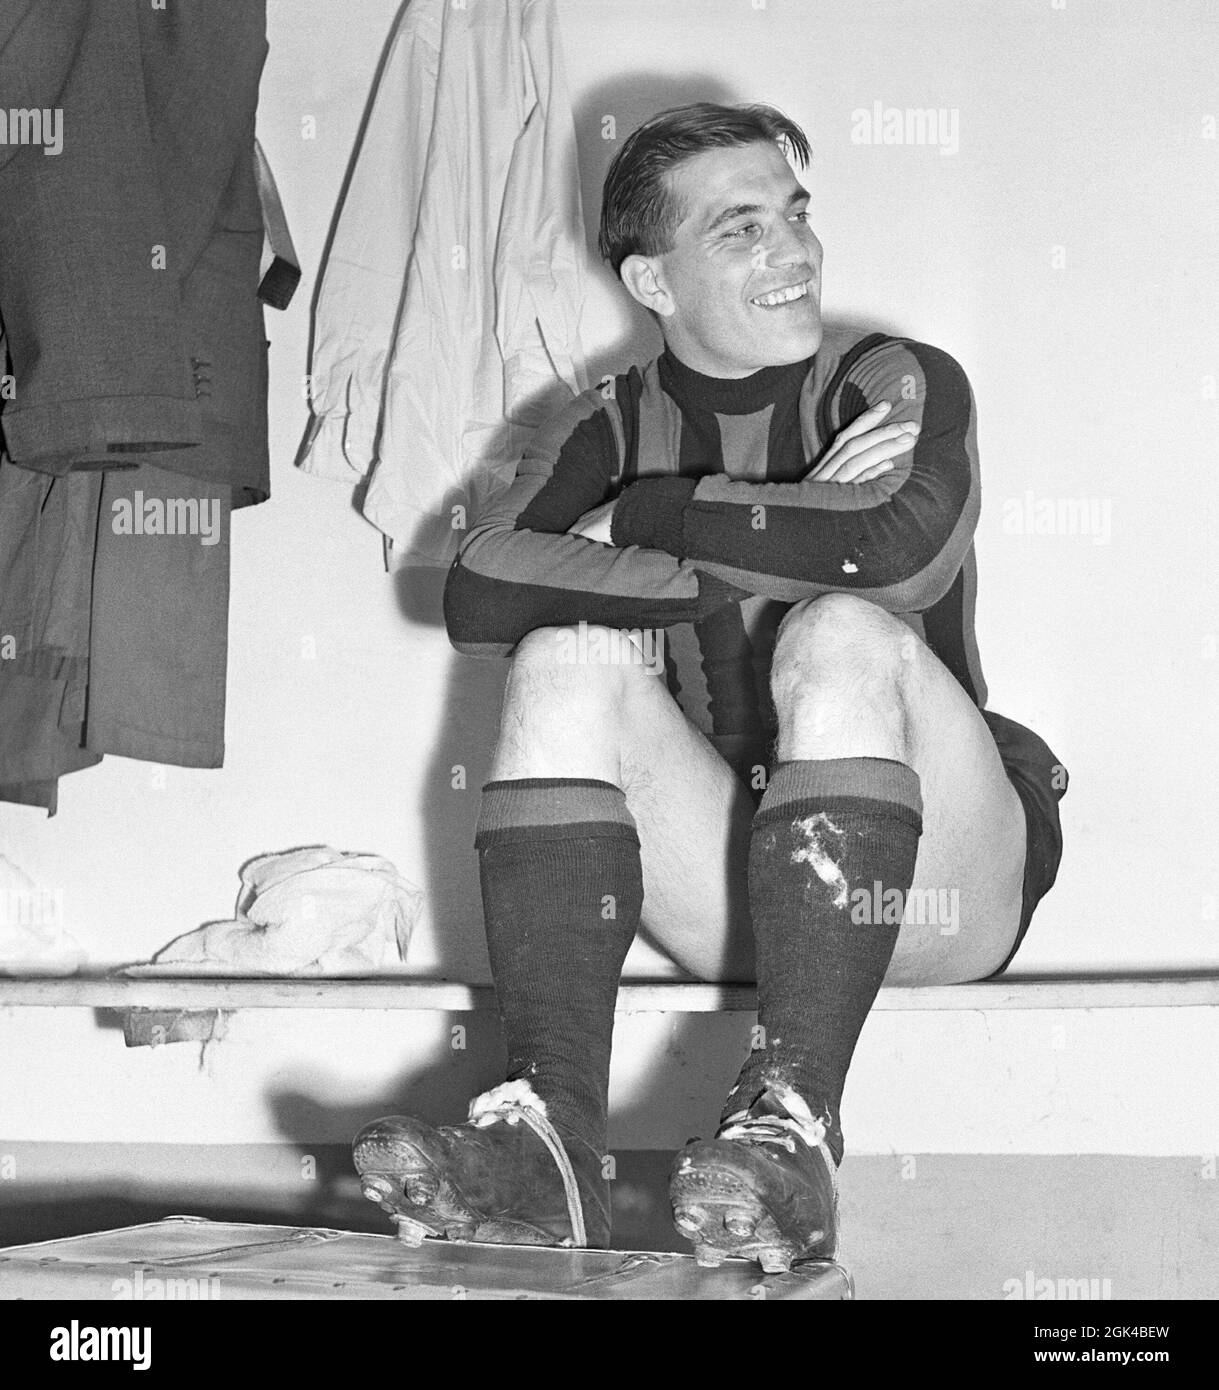 Gunnar Nordahl. 19 octobre 1921 - 15 septembre 1995. Joueur de football suédois, plus connu pour jouer au club de football italien AC Milan de 1949 à 1956. Il alambics détient le record des buts par apparition en Italie. Nordahl est considéré comme l'un des plus grands footballeurs suédois de tous les temps. Nordahl est devenu le premier footballeur professionnel suédois lorsqu'il est transféré à l'AC Milan le 22 1949 janvier. Plus tard, il s'associe avec son équipe nationale partenaires de grève, Gunnar Gren et Nils Liedholm pour former le célèbre trio GRE-No-Li, un trio réussi jouant ensemble pour AC Milan. Mila Banque D'Images